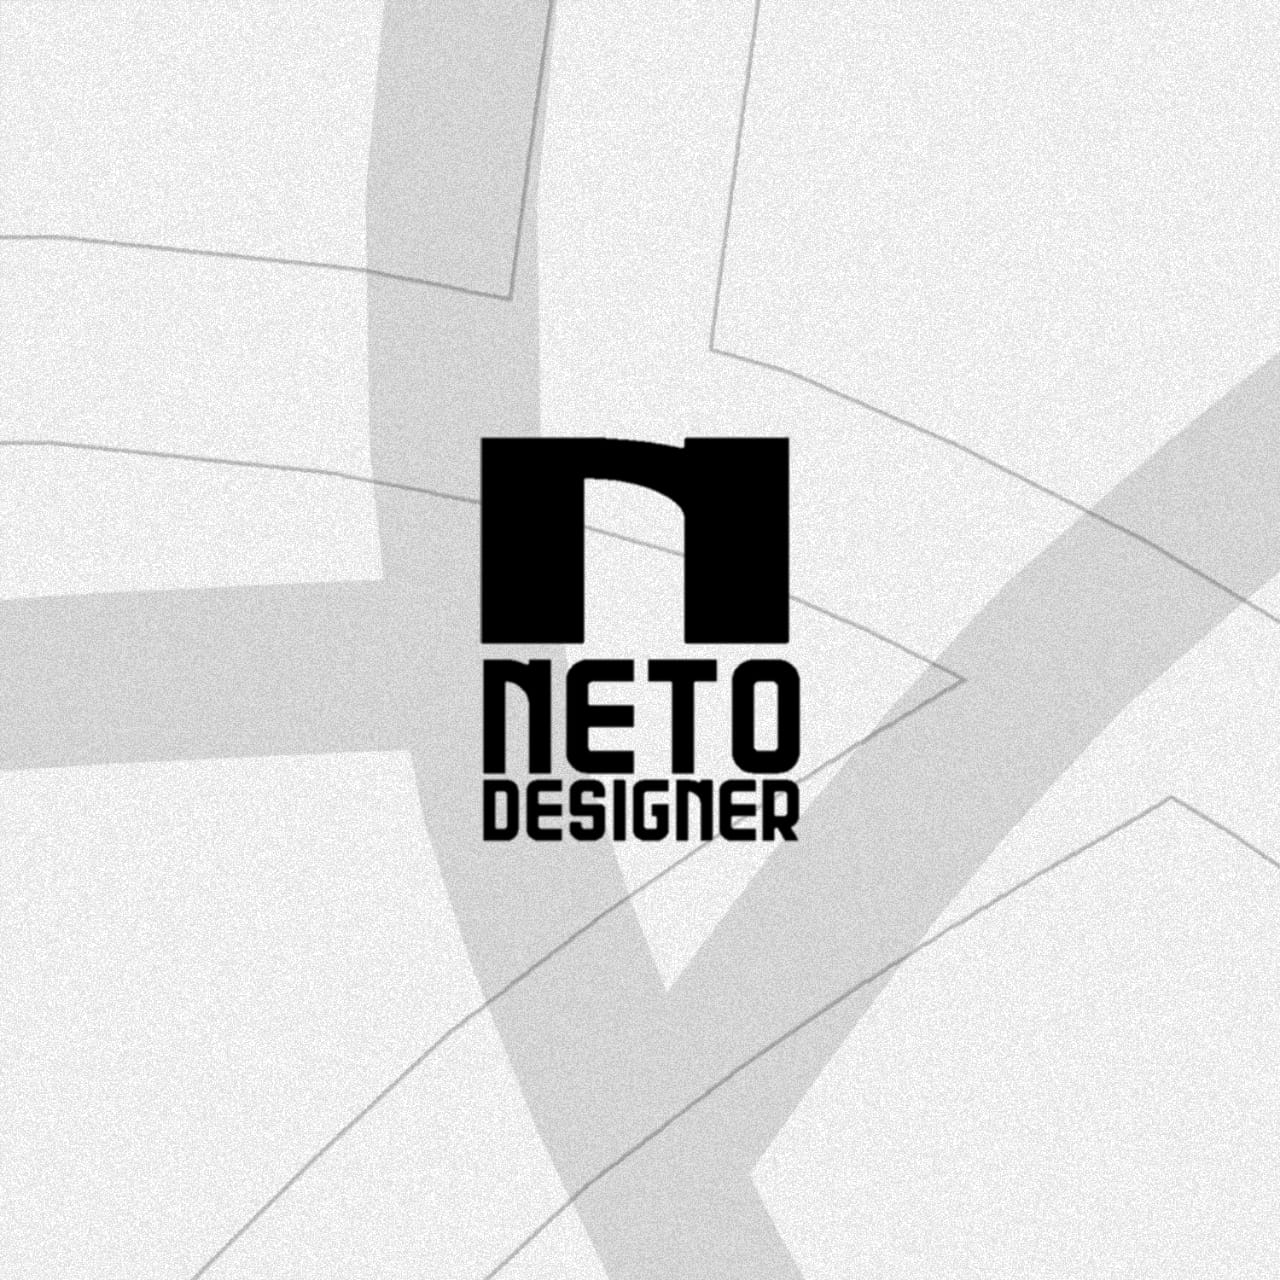 Neto Designer